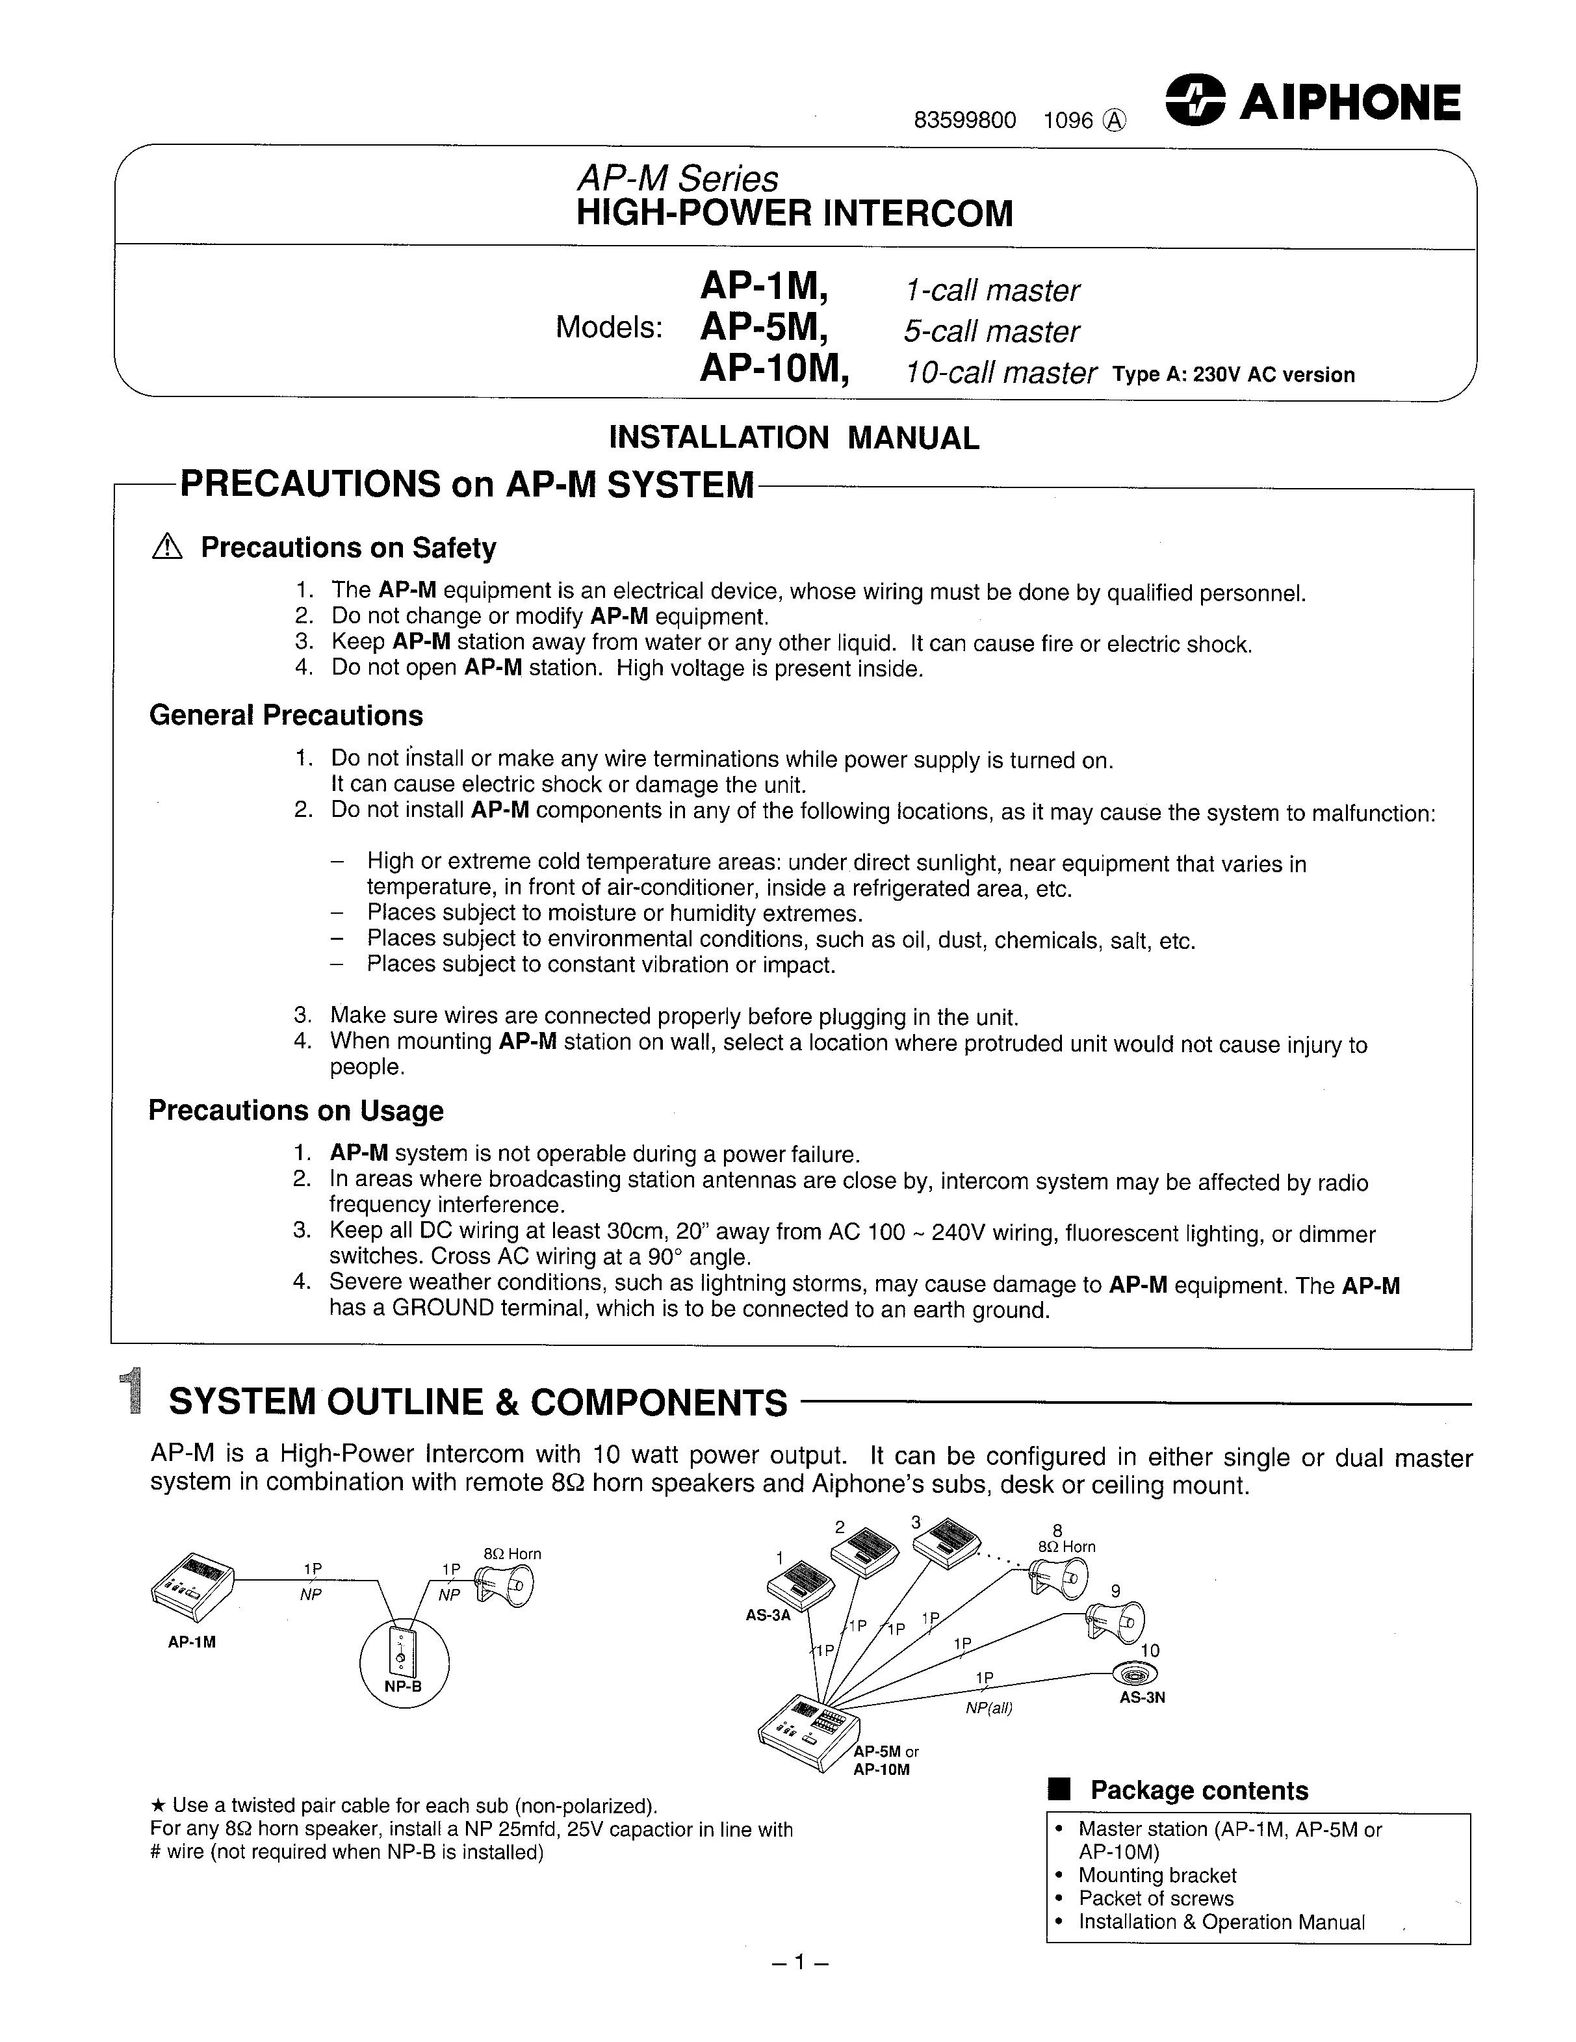 Aiphone AP-1M Saw User Manual